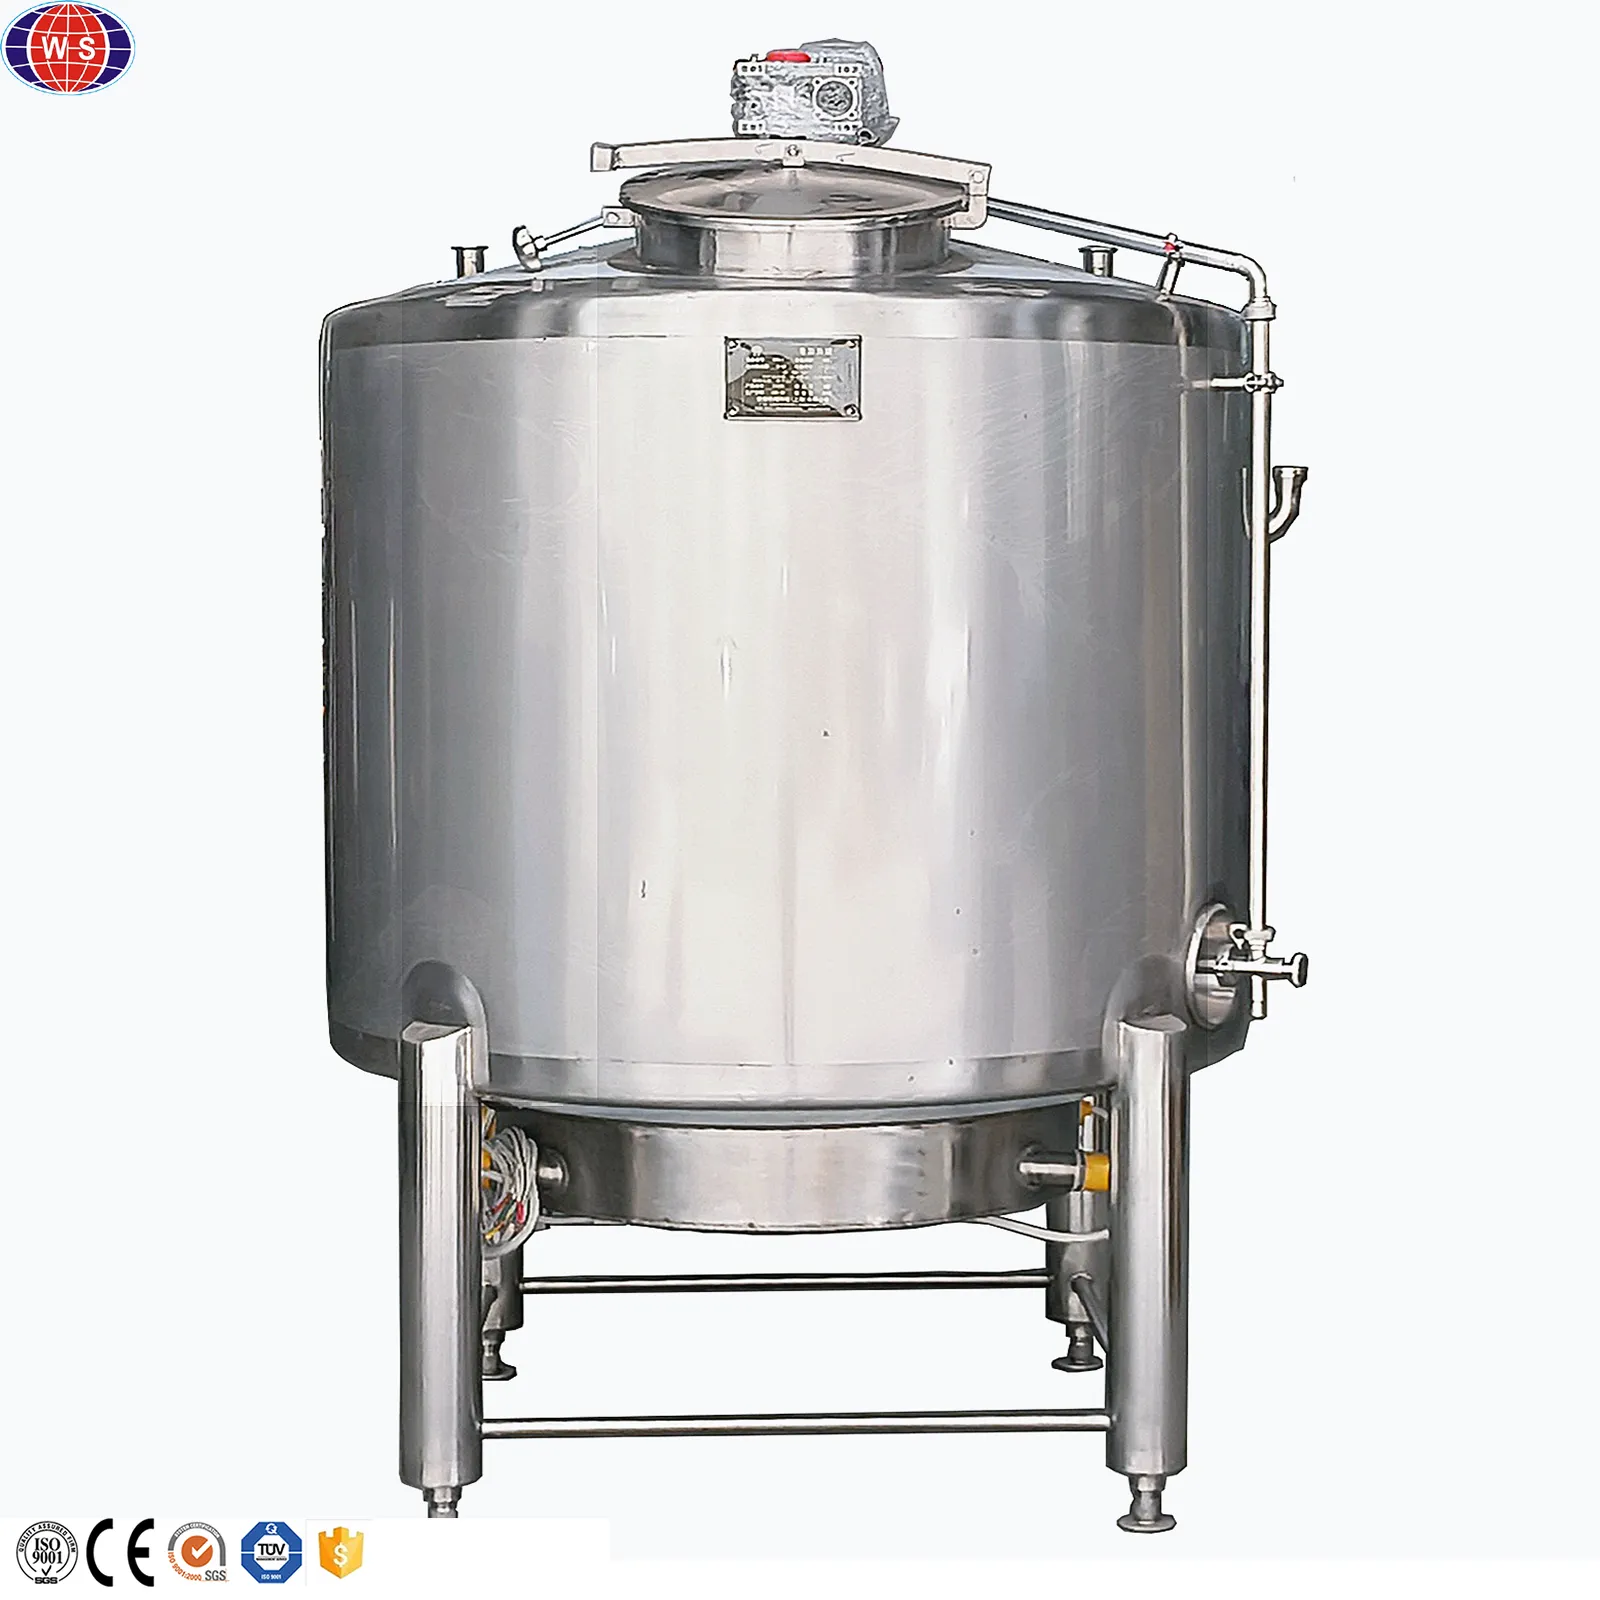 Haute qualité 300-5000l acier inoxydable chauffage électrique réservoir de mélange réservoir de maintien avec agitateur